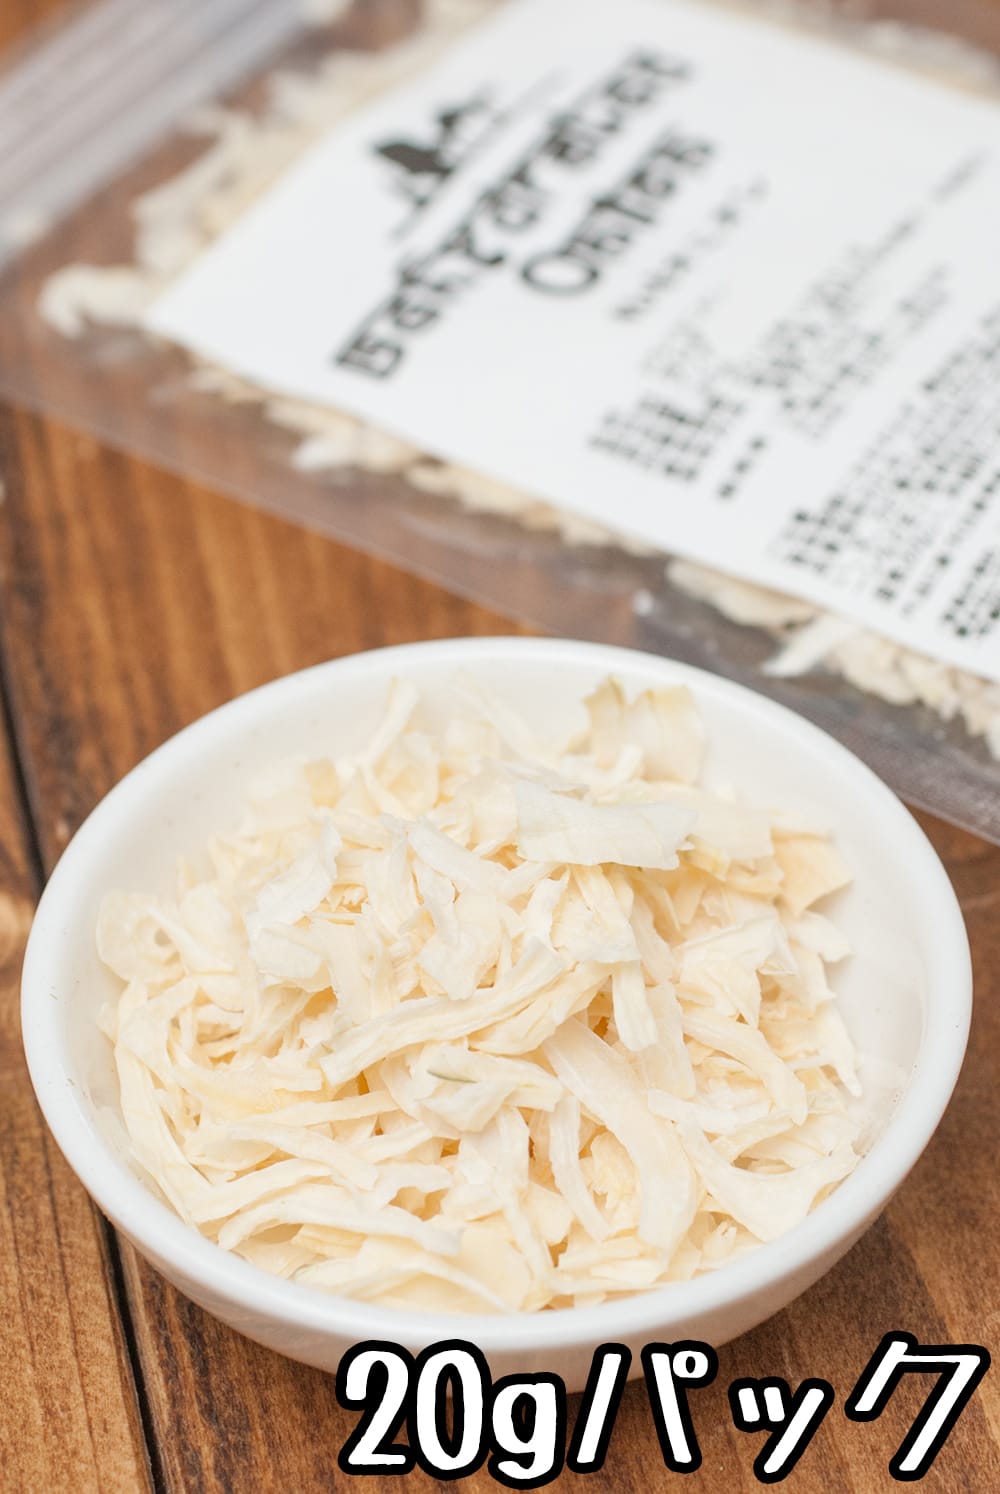 オニオン 乾燥オニオン Dehydrated Onion (20ｇパック) インド スパイス カレー アジアン食品 エスニック食材  :ID-SPC-350:インド・アジア雑貨ティラキタ - 通販 - Yahoo!ショッピング